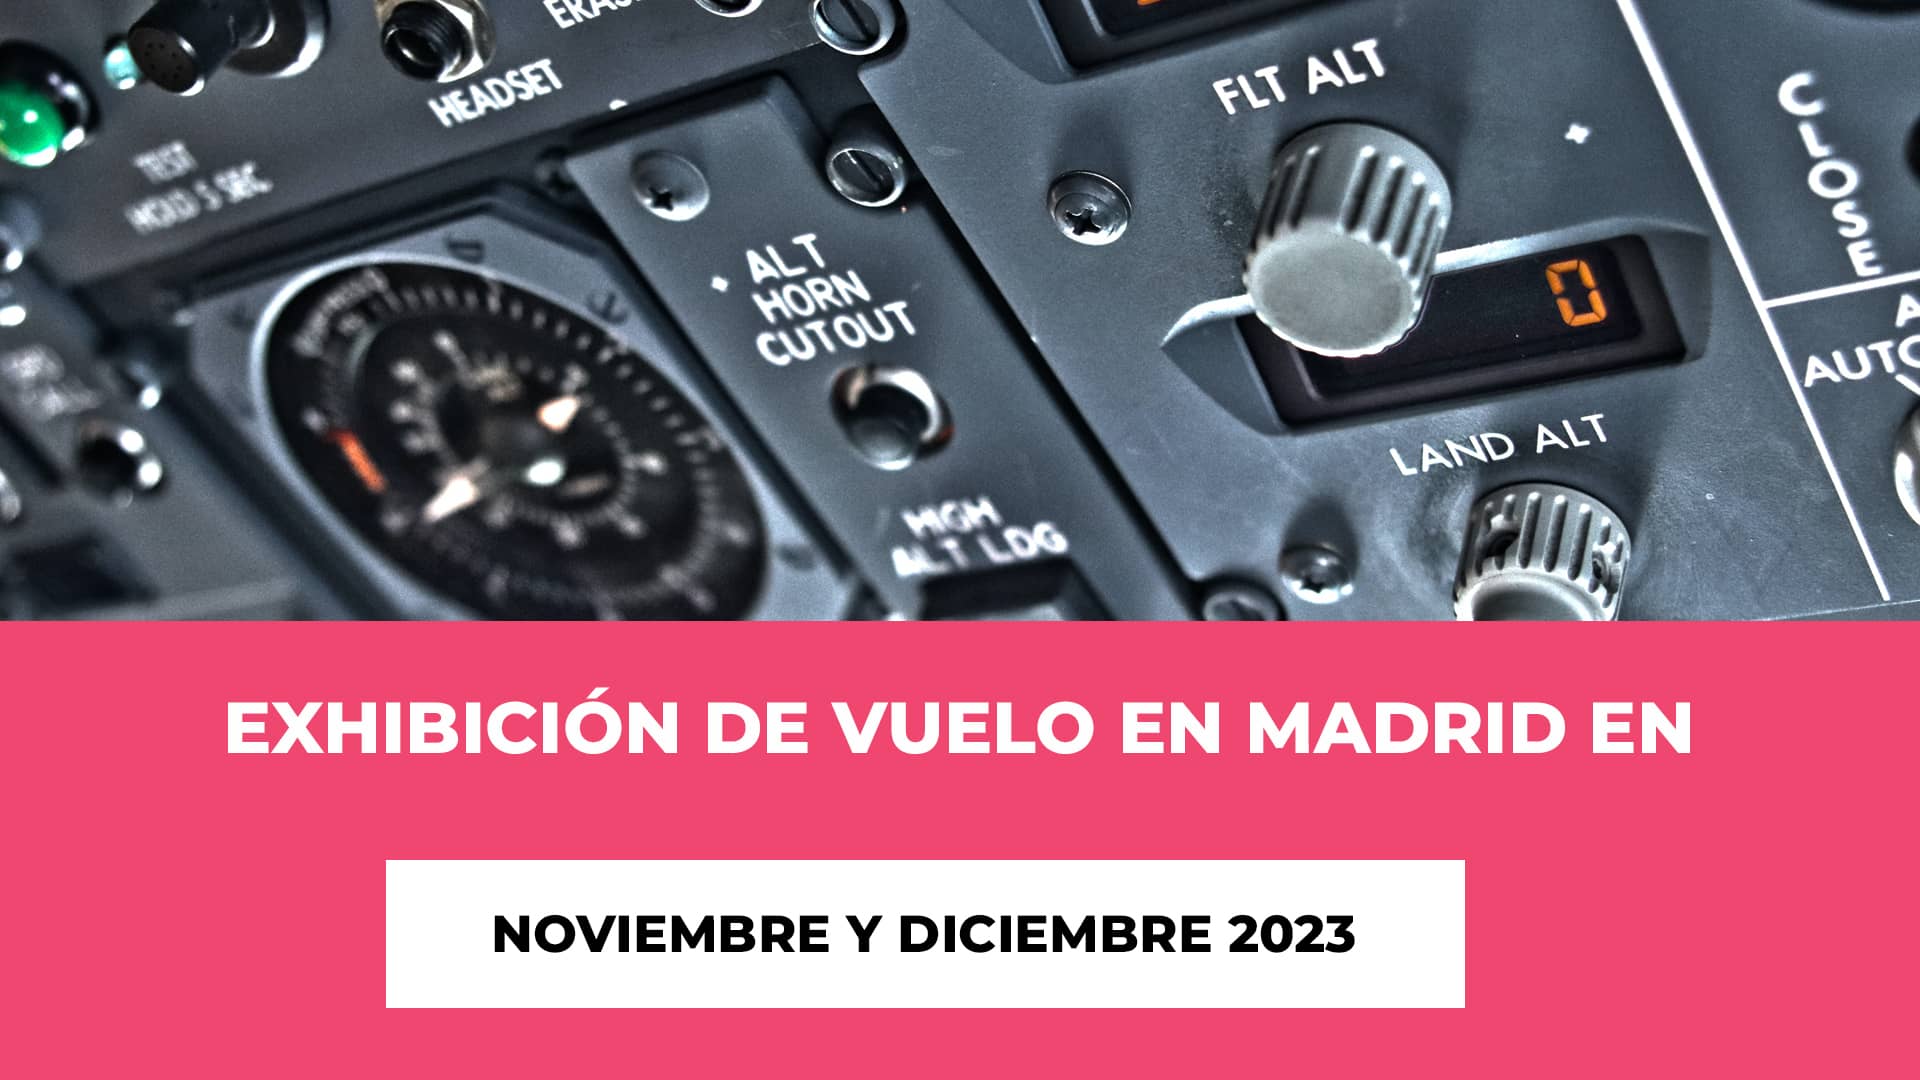 Exhibición de vuelo en Madrid en Nov y Dic 2023 Entradas - Historia, Vuelos y Emoción - Duración - Precios de las entradas